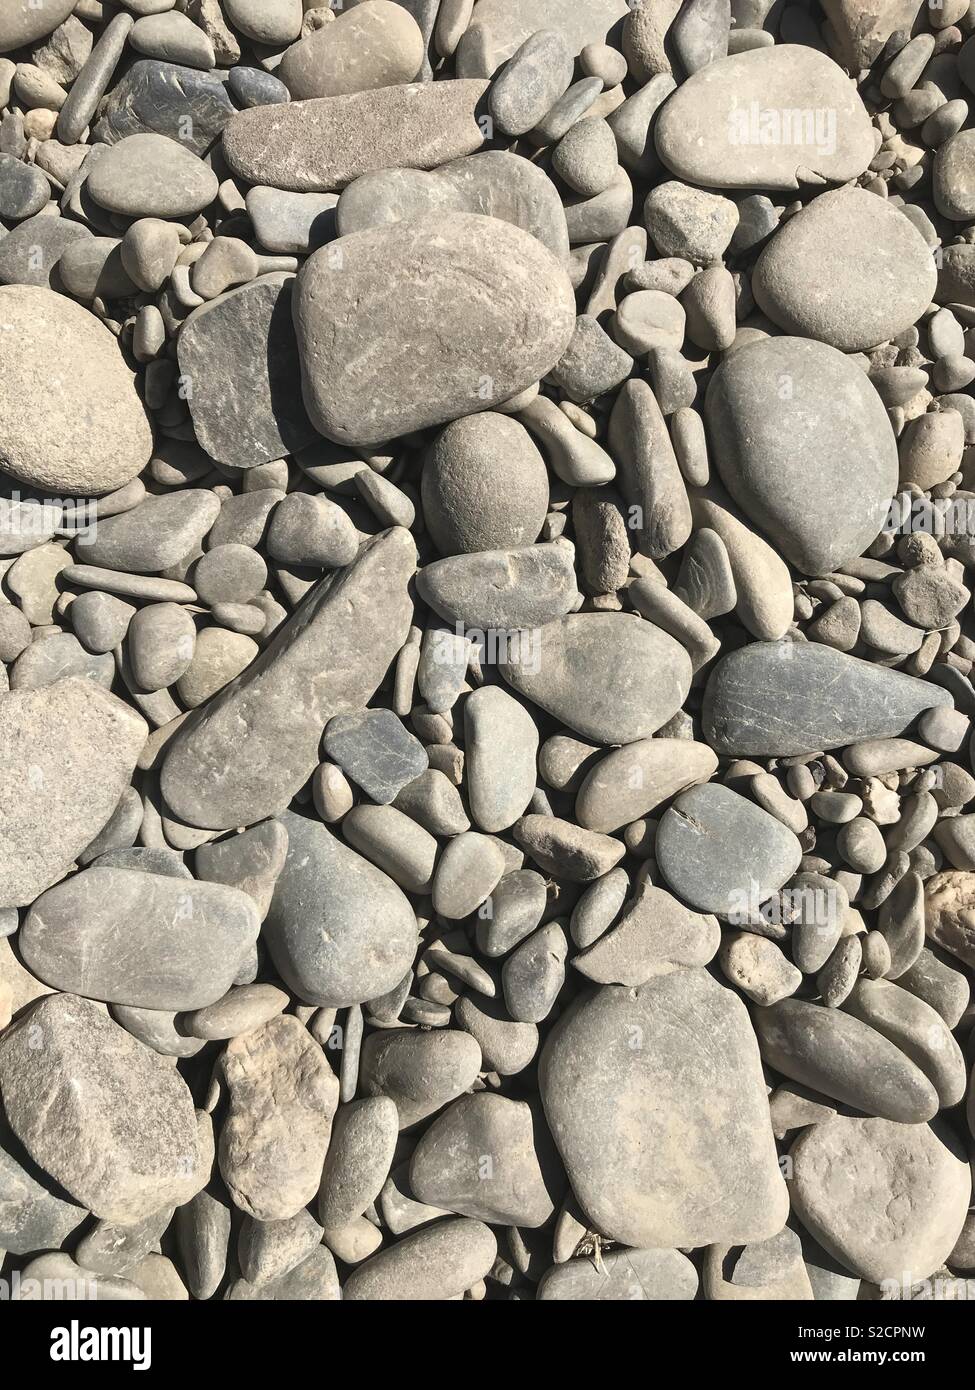 Hay riverbed stones Stock Photo